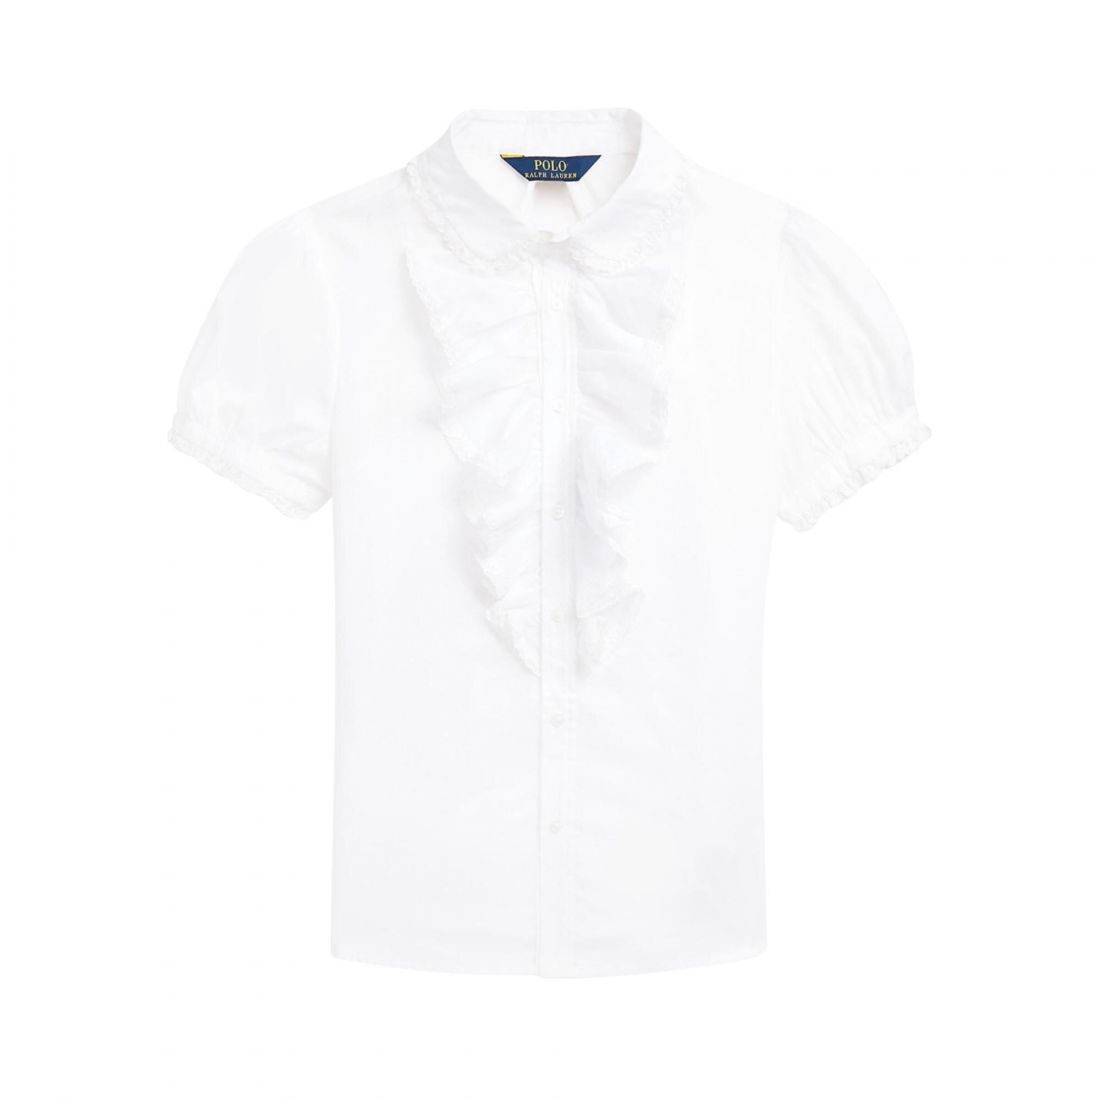 Polo Ralph Lauren Girls Shirt